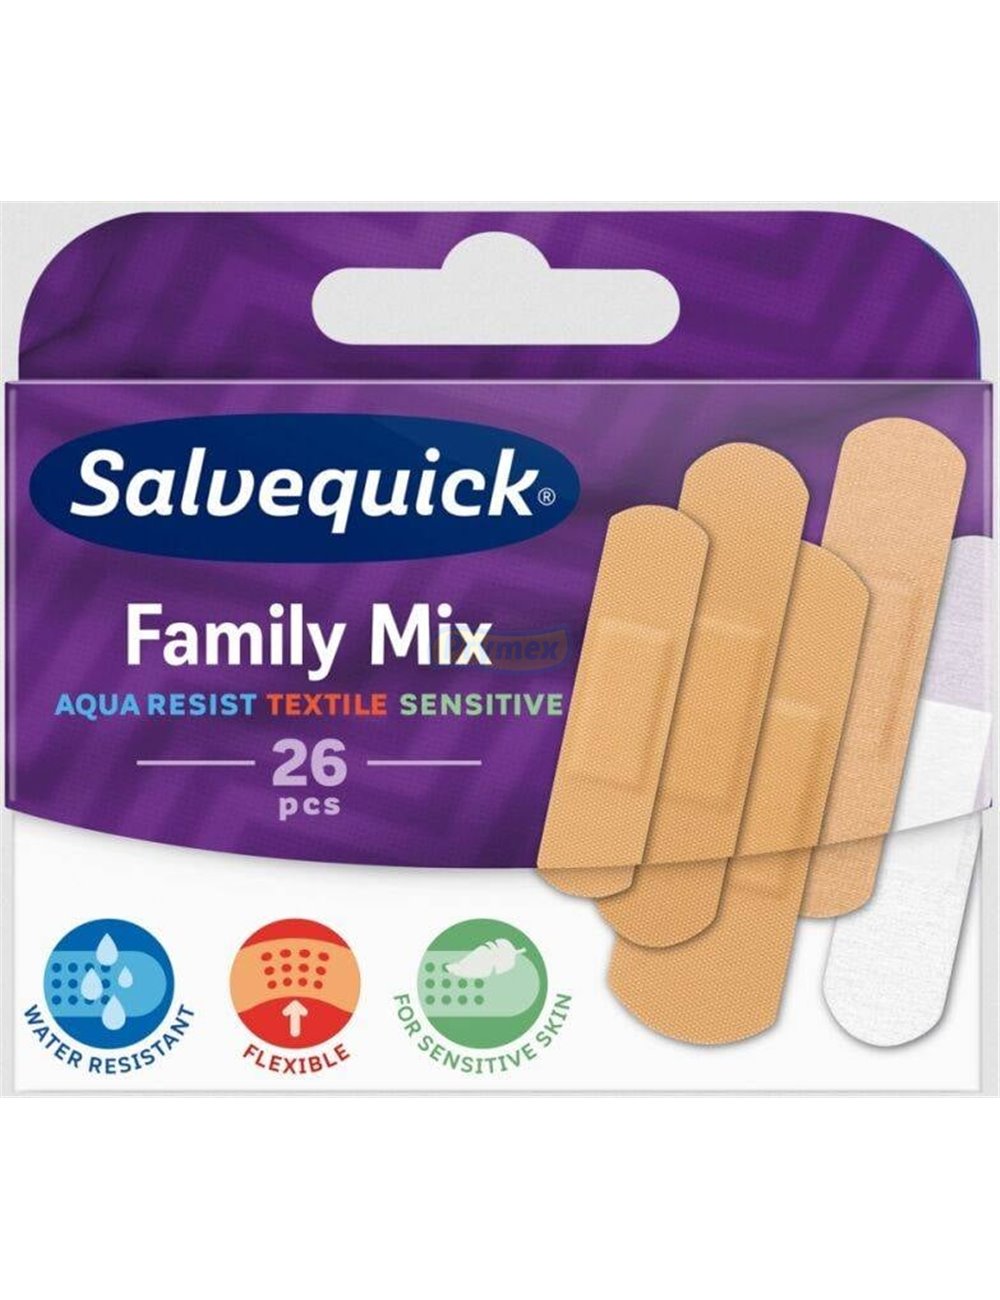 Plastry Hipoalergiczne Family Mix (5 rozmiarów) Salvequick 26 szt